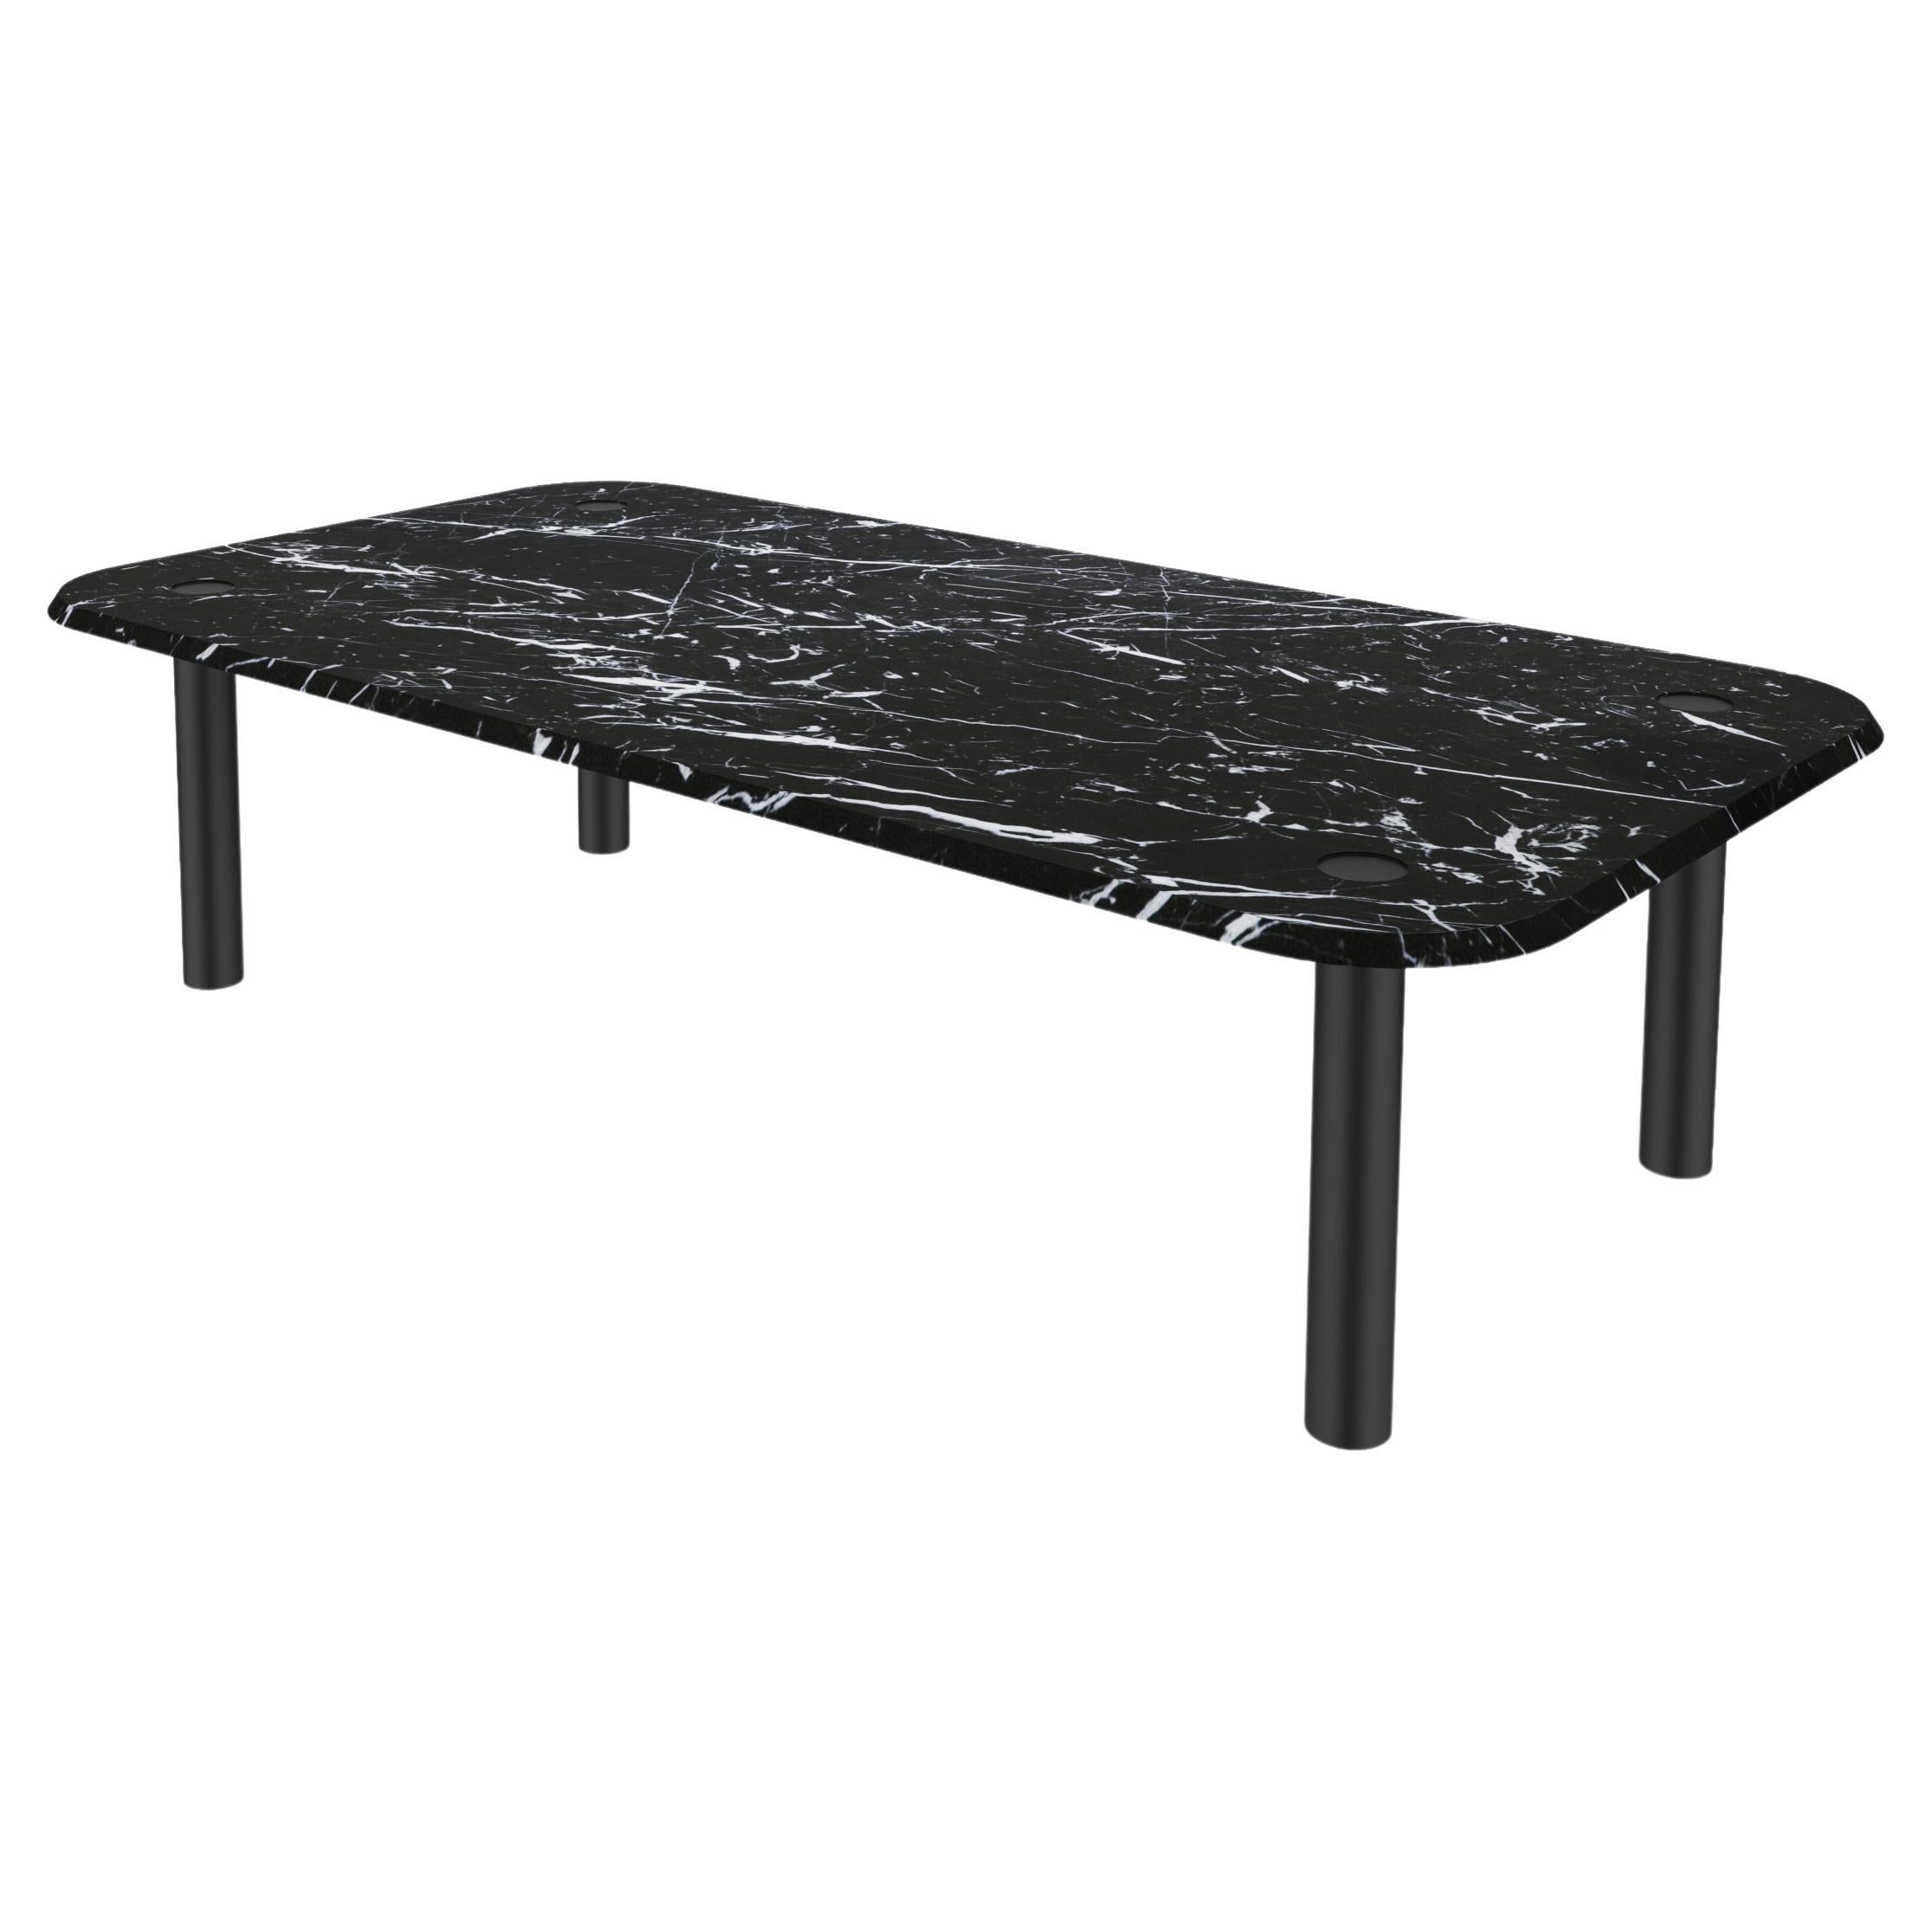 NORDST Table basse SEM, marbre italien Black Eagle, Danish Modern Design, New